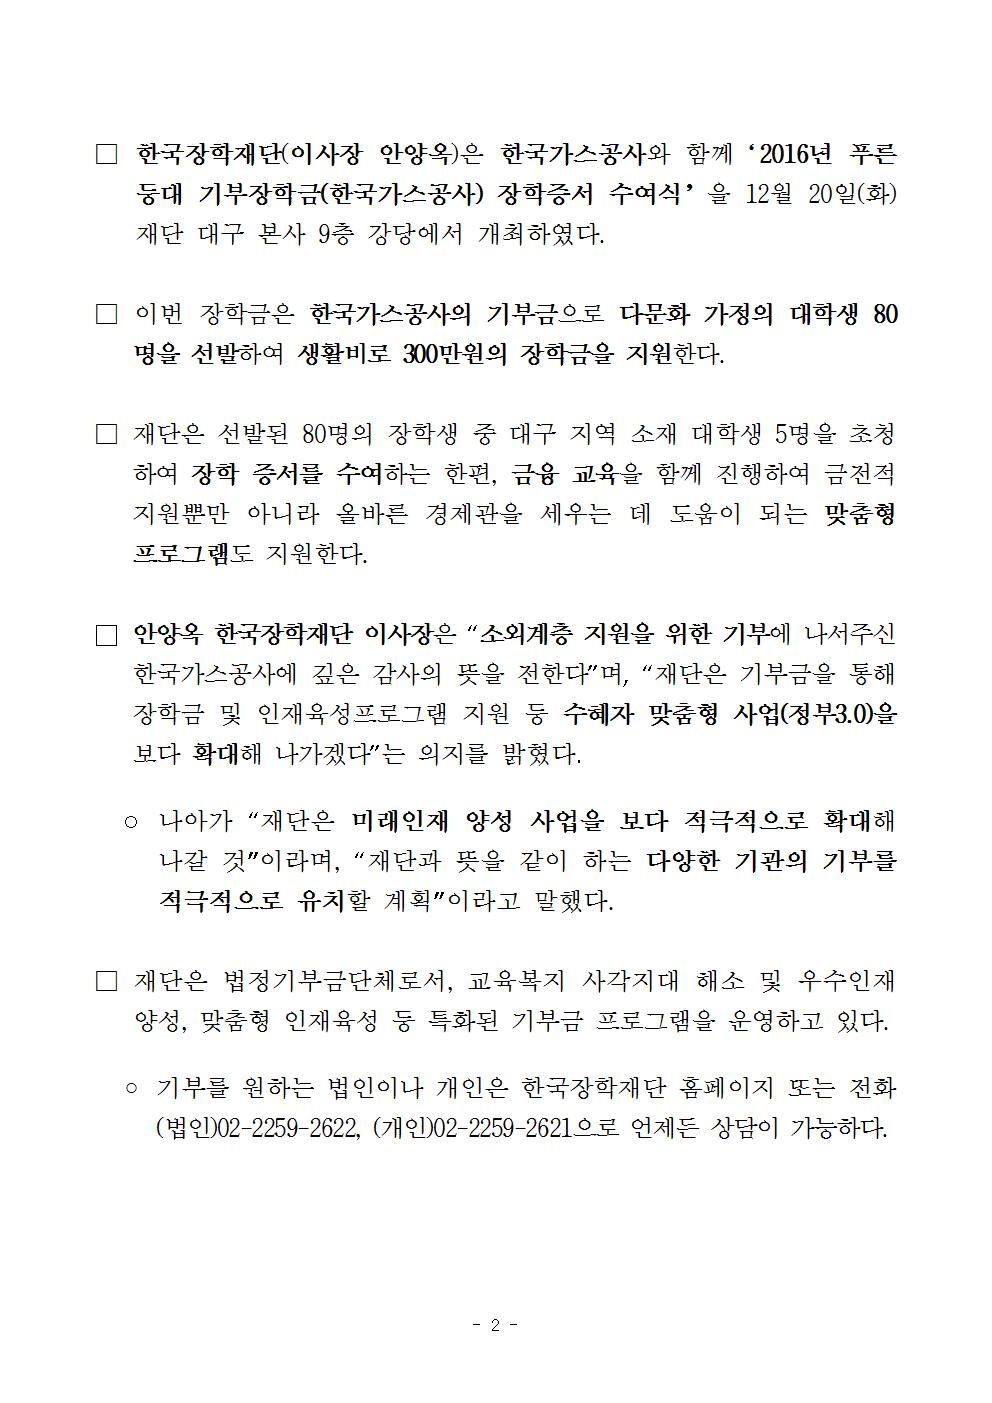 보도자료 한국가스공사 기부장학생 장학증서 수여식 개최 관련 이미지입니다. 자세한 내용은 아래를 참고하세요.